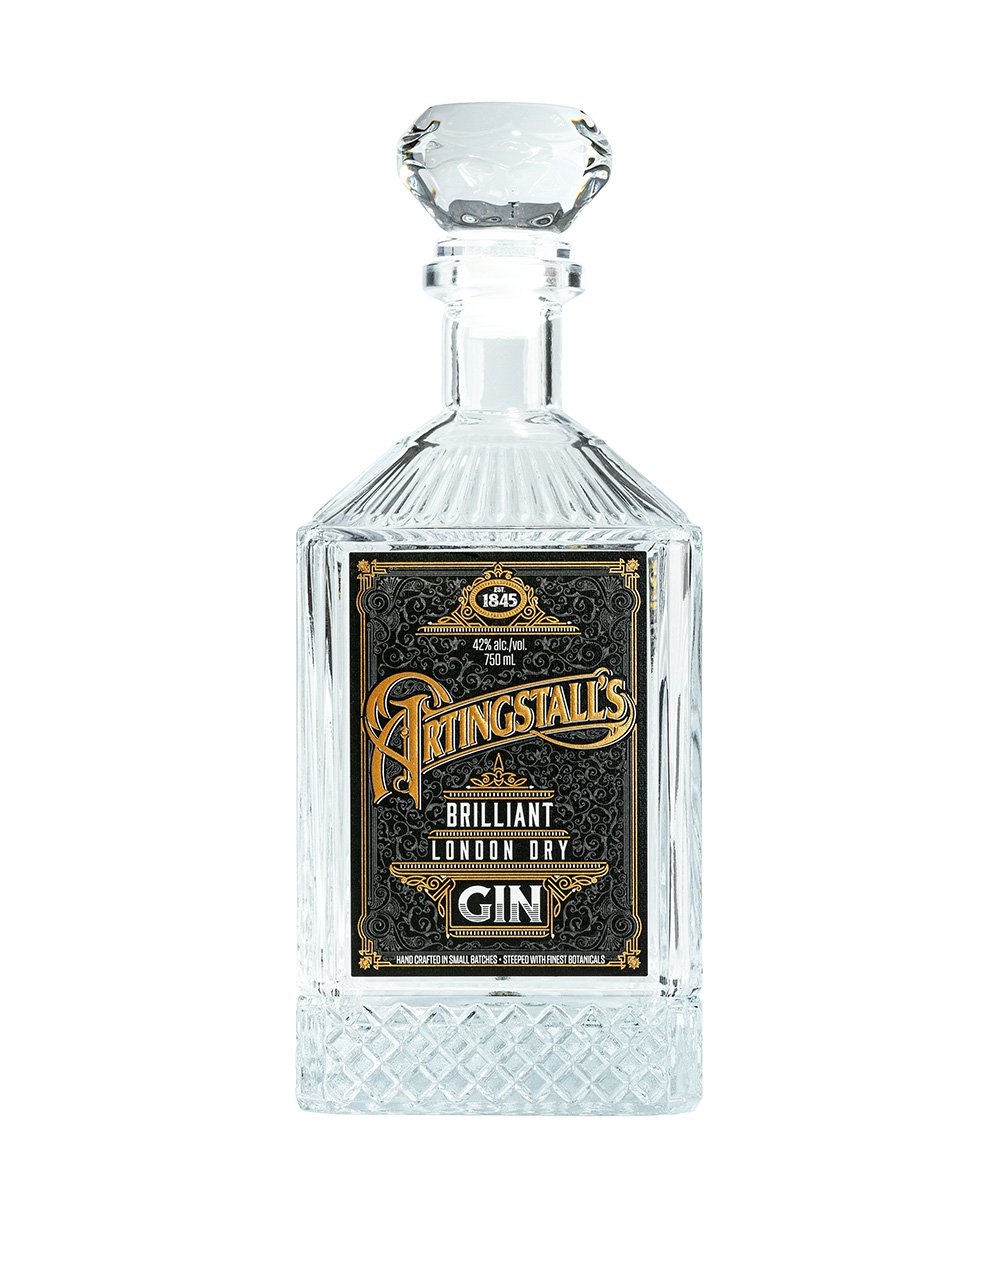 Artingstall's Brilliant London Dry Gin bottle